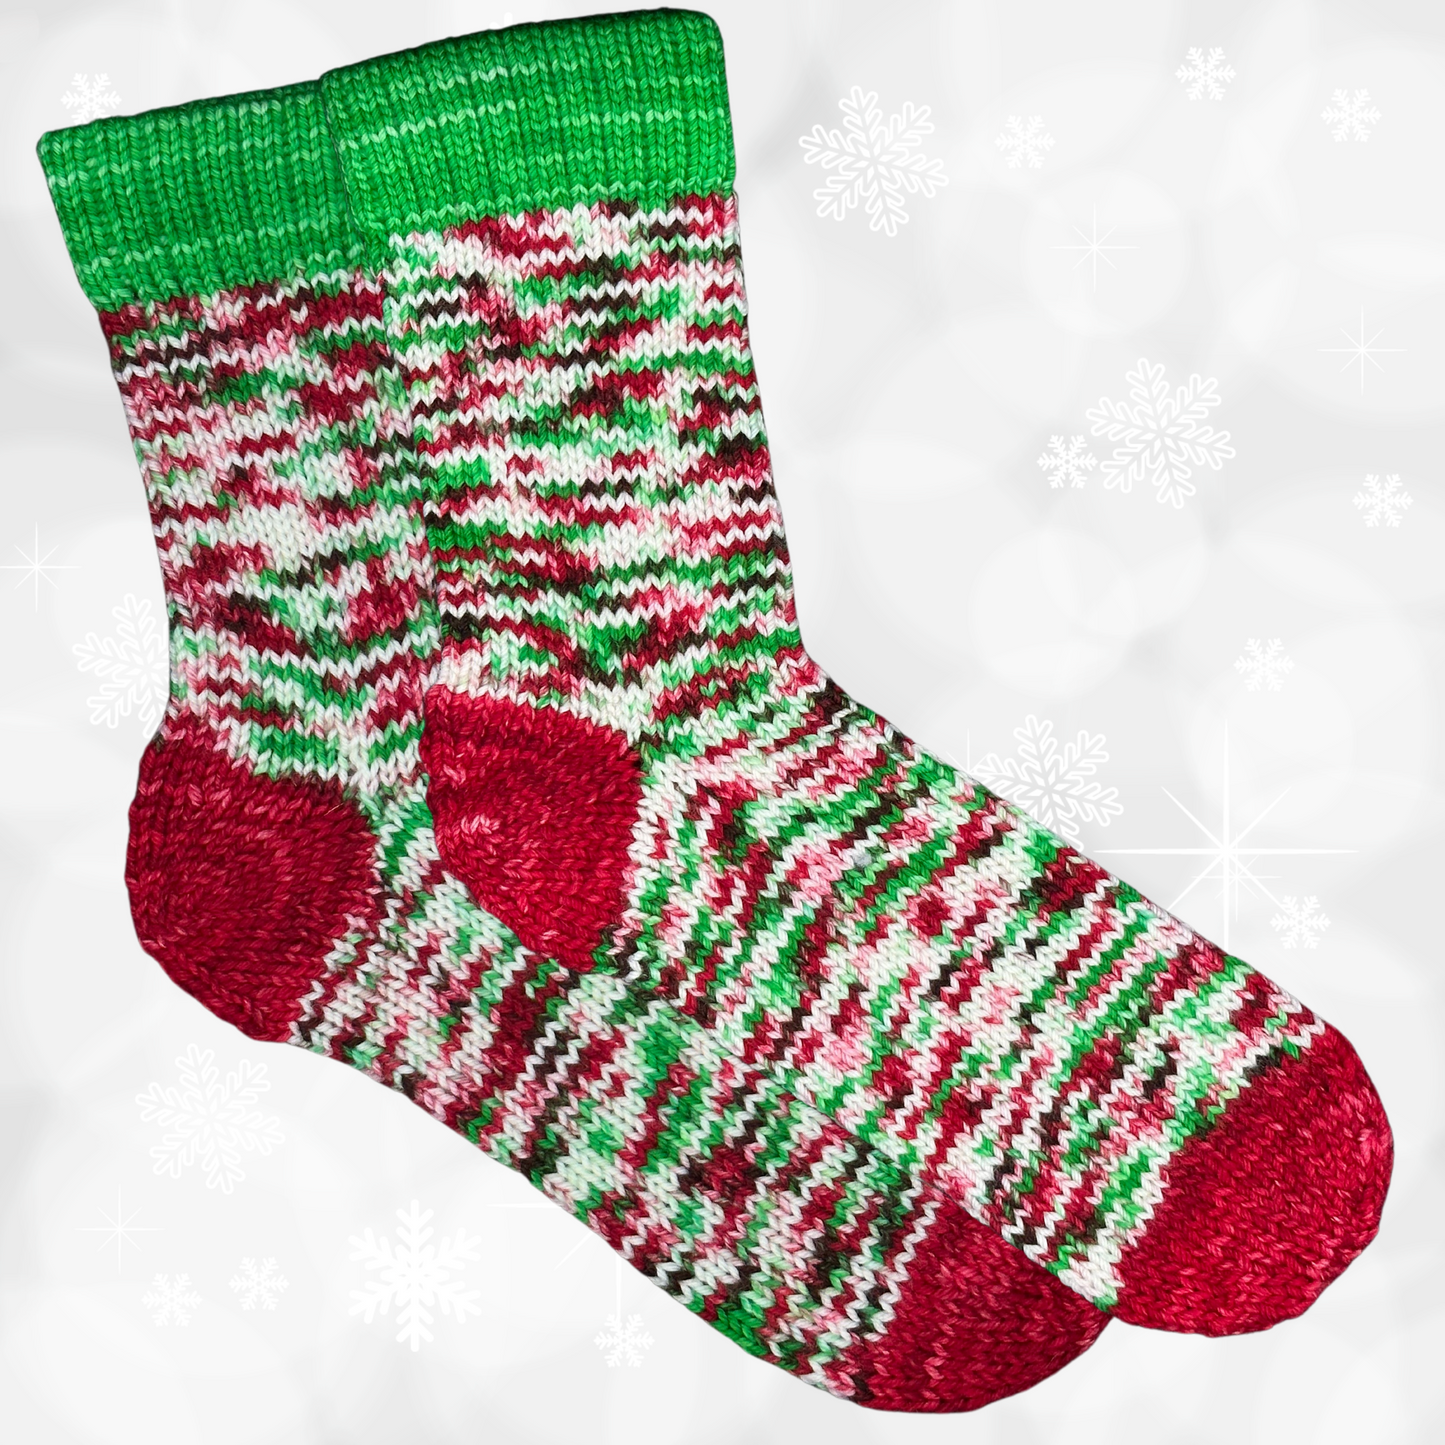 3 Skein Yarn Bundle - Simply Christmas